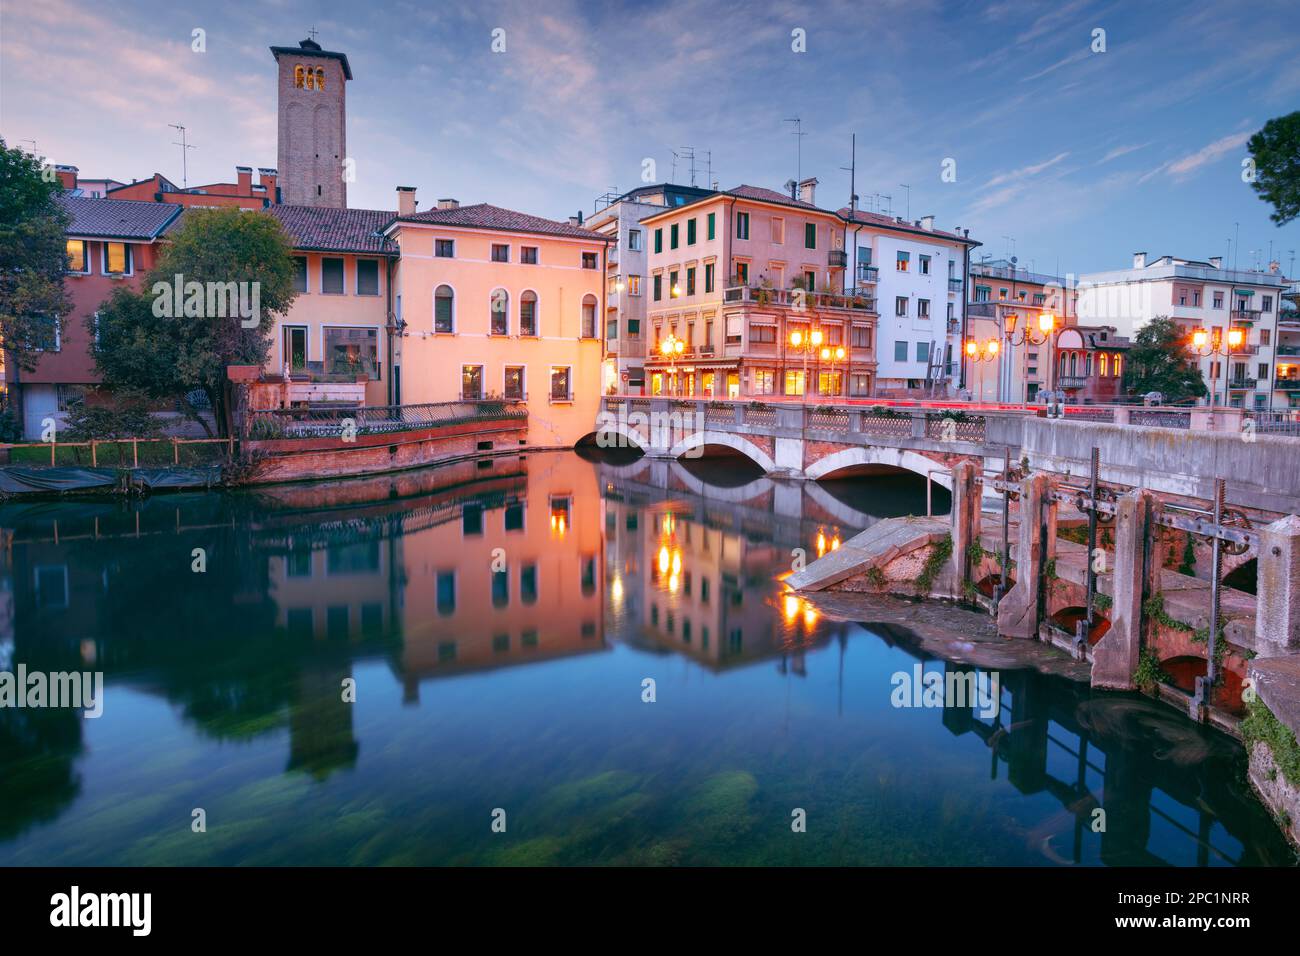 Trévise, Italie. Image de paysage urbain du centre historique de Trévise, Italie au coucher du soleil. Banque D'Images